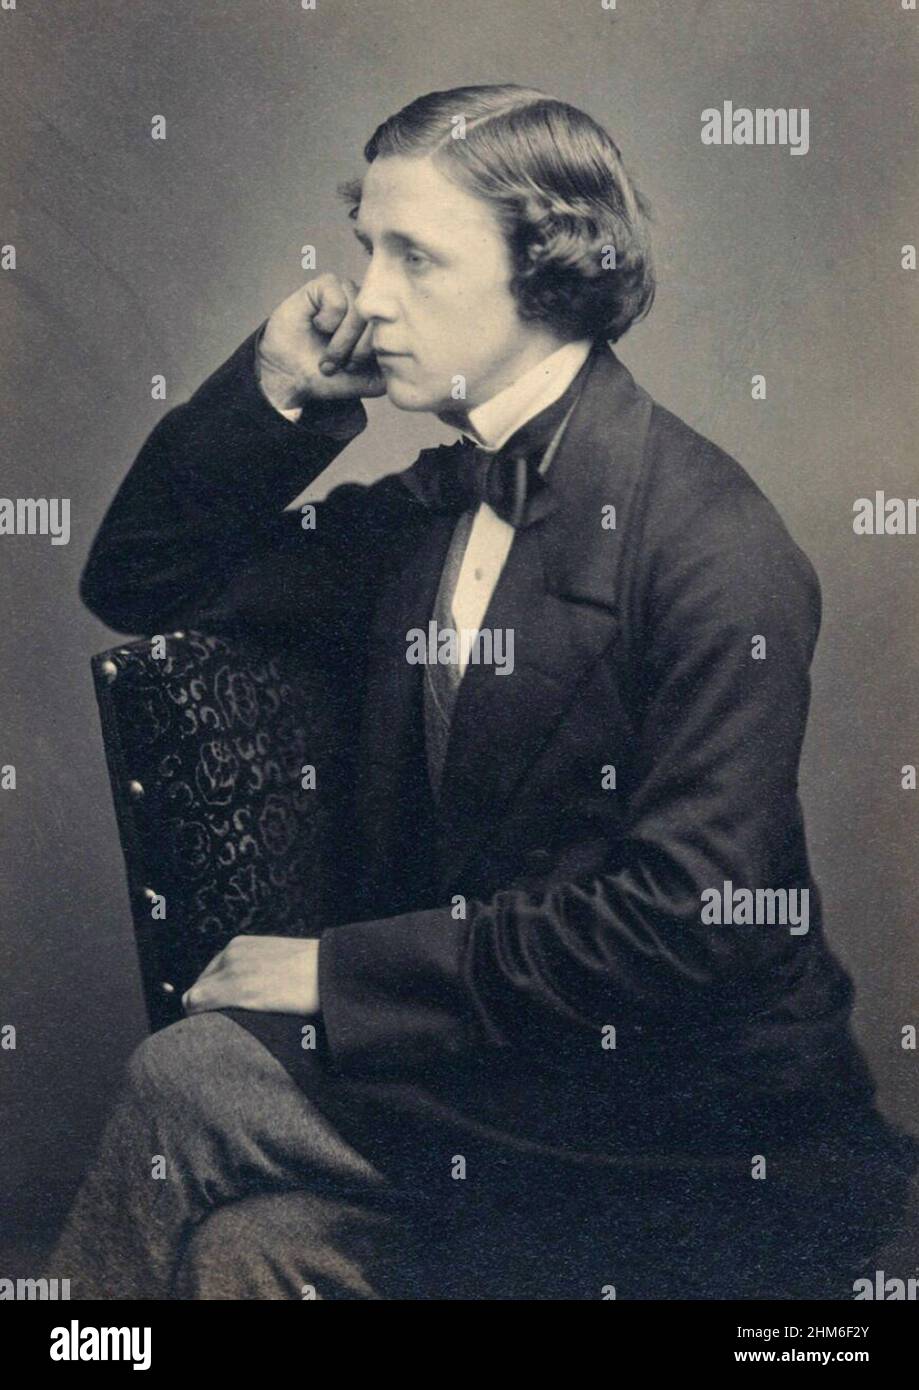 Retrato del autor Lewis Carroll (nombre real Charles Lutwidge Dodgson), autor de Alice in Wonderland, desde 1857, cuando tenía 25 años Foto de stock